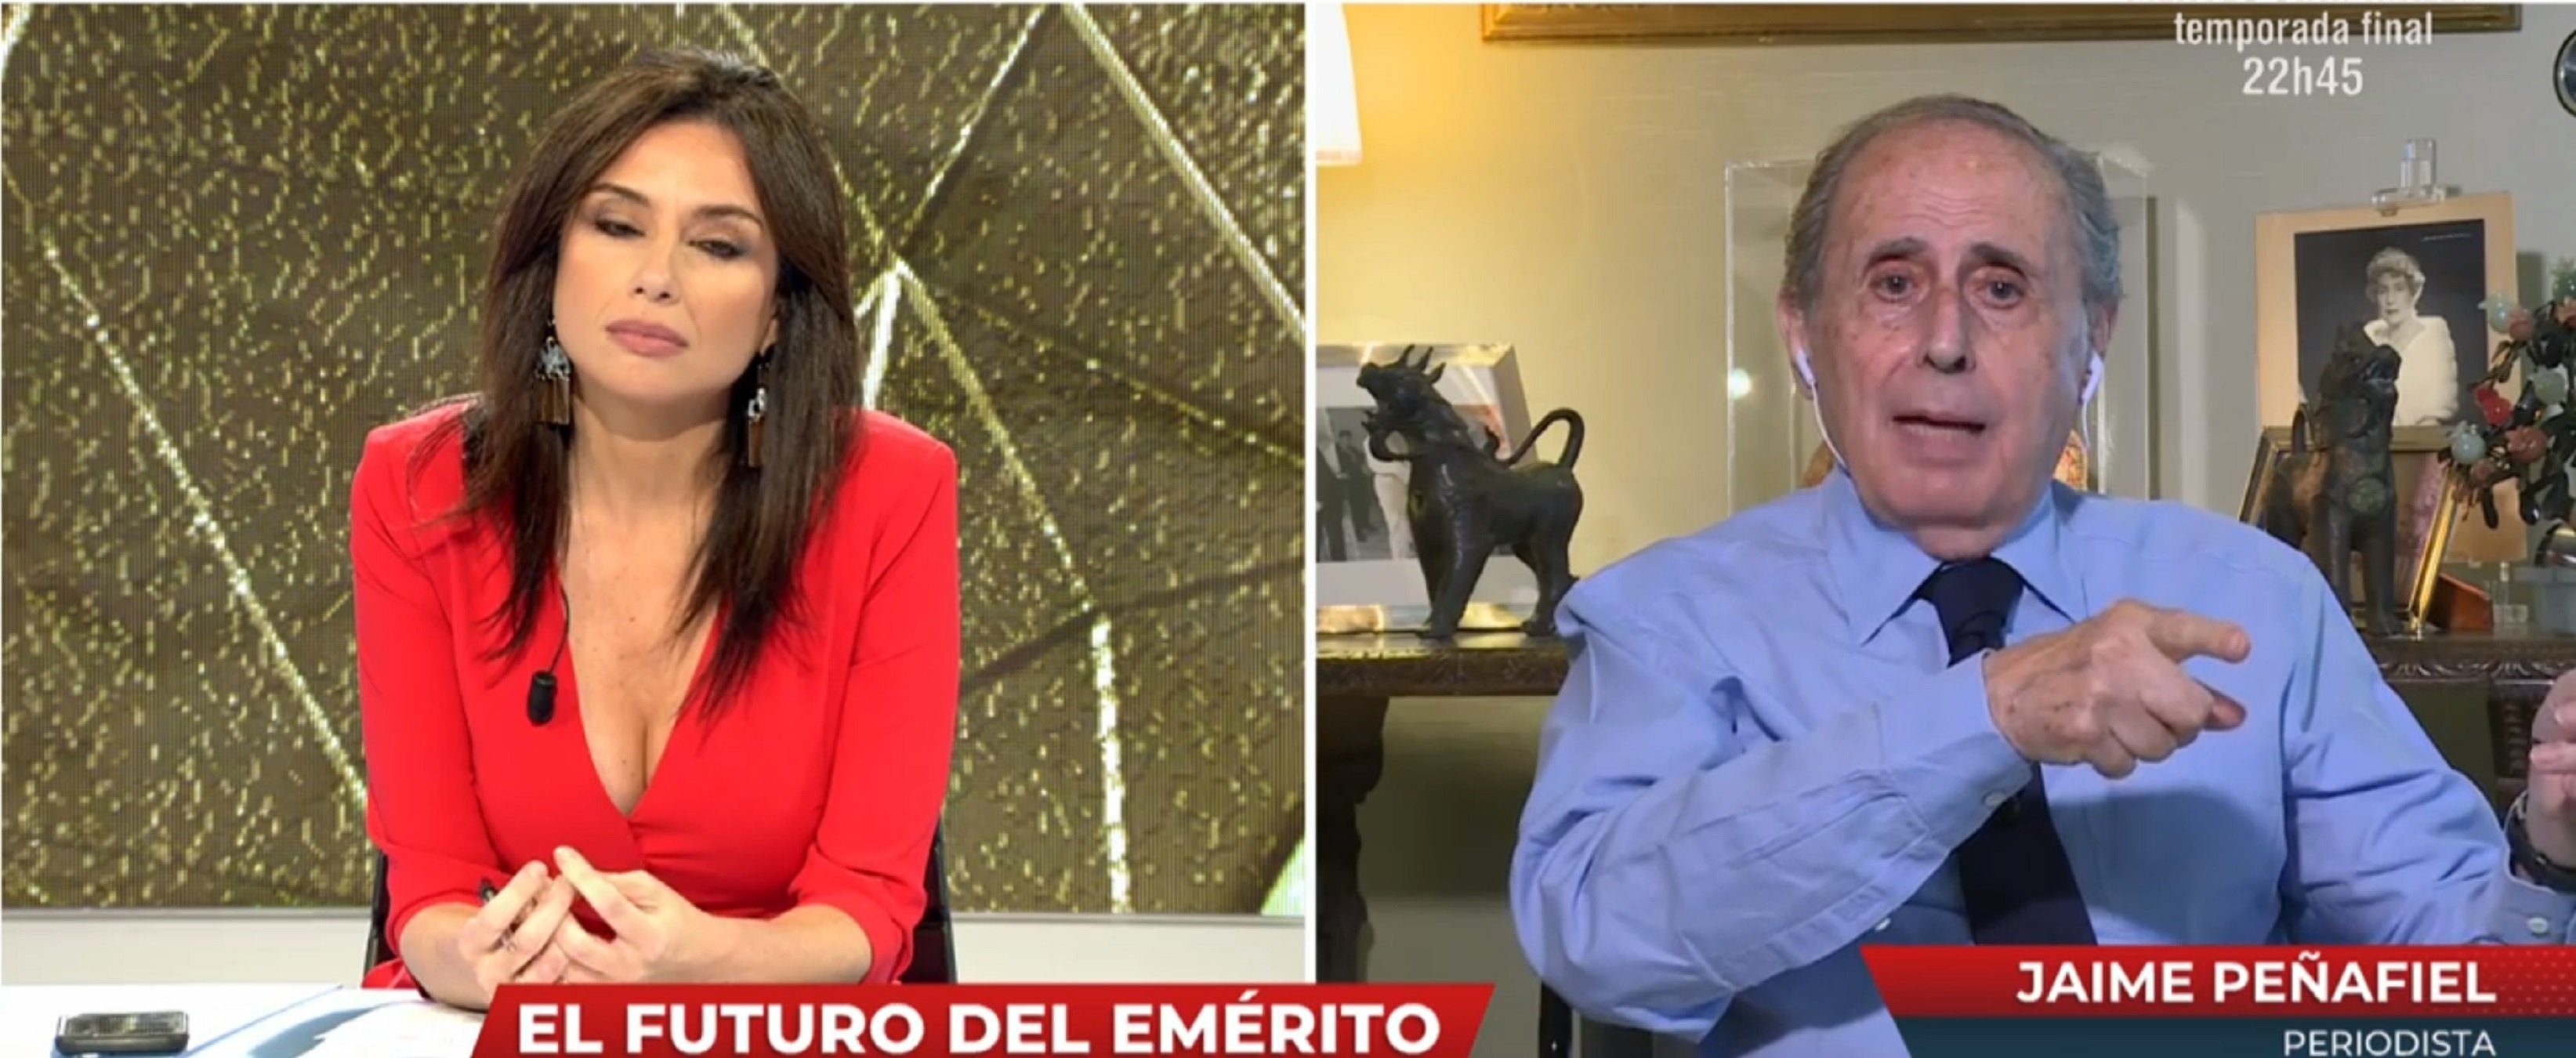 La bomba de Zarzuela: un comunicado domingo noche y dirá esto de Juan Carlos